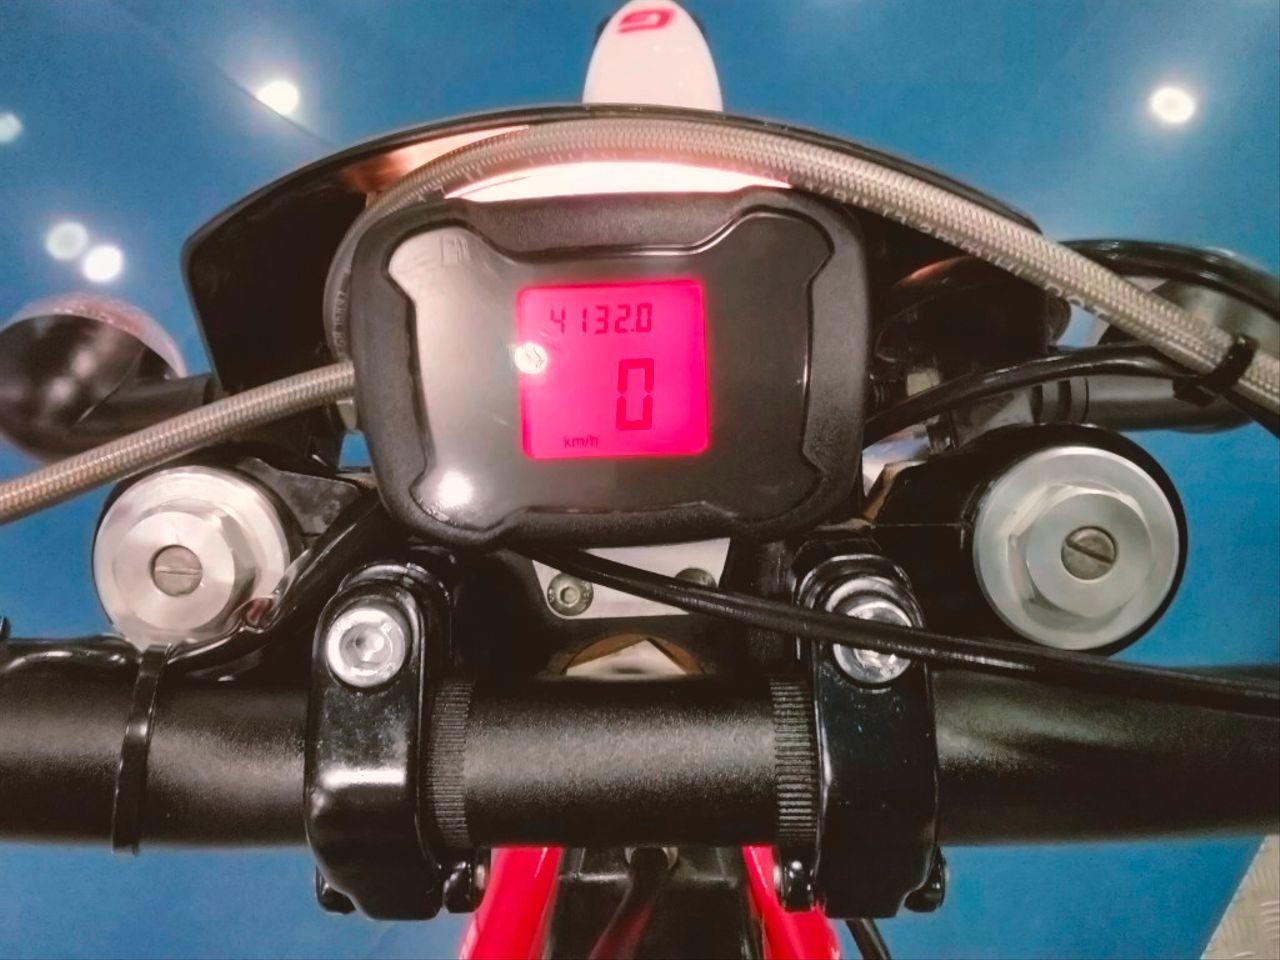 Moto GAS GAS CONTACT 250 ES de seguna mano del año 2019 en Málaga